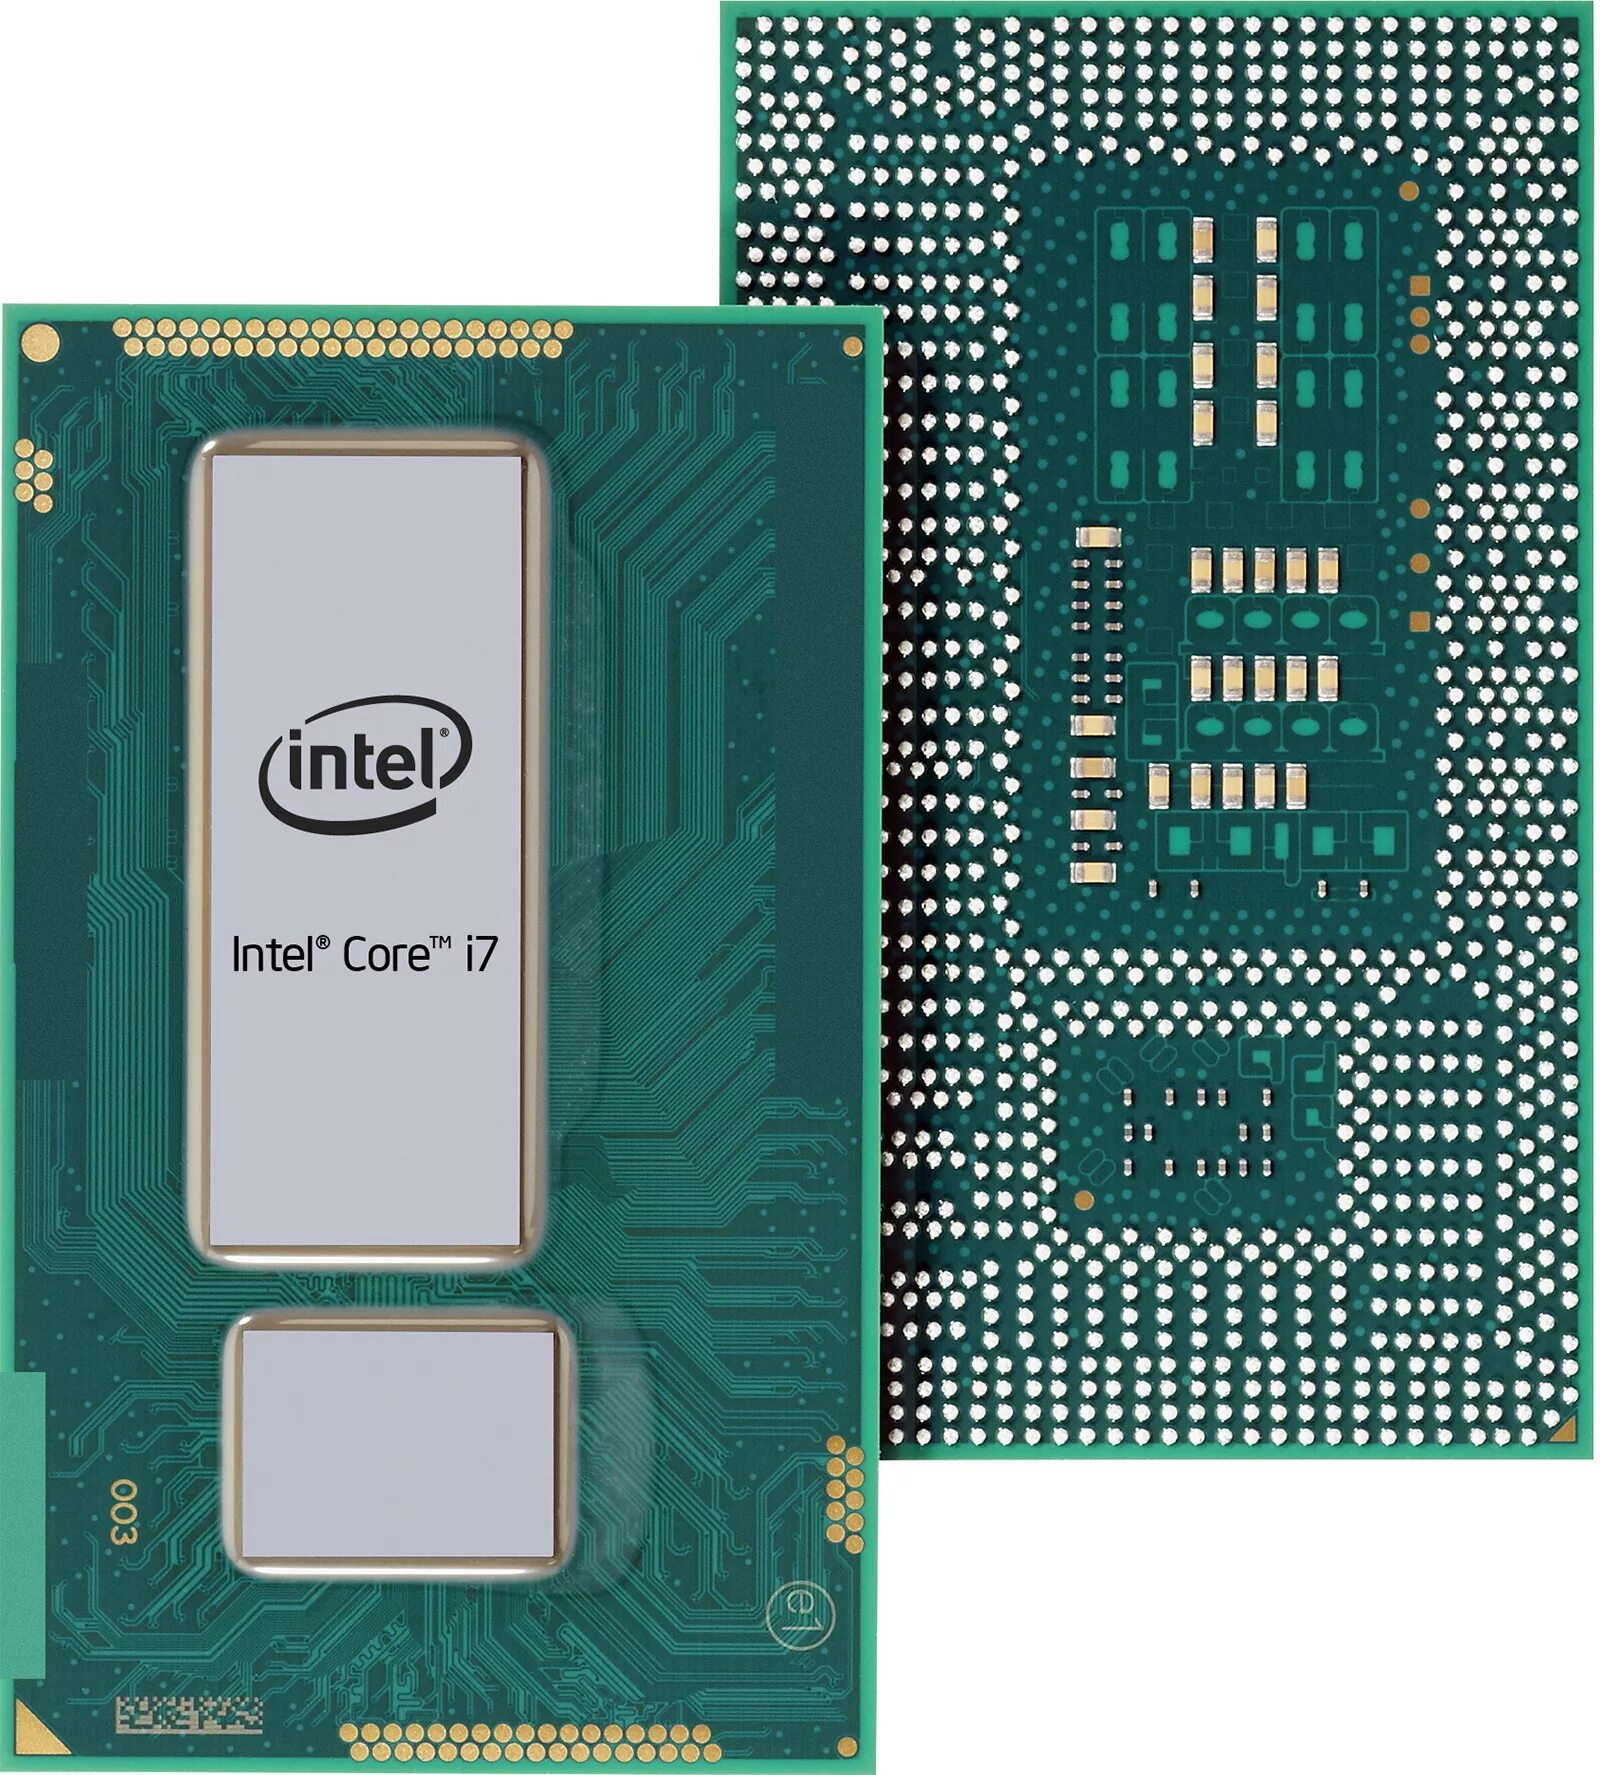 Процессор Intel Haswell. Core i5 мобильный процессор Intel. Чип Core i5. Мобильный процессор для ноутбука Intel cor i5. Чип интел